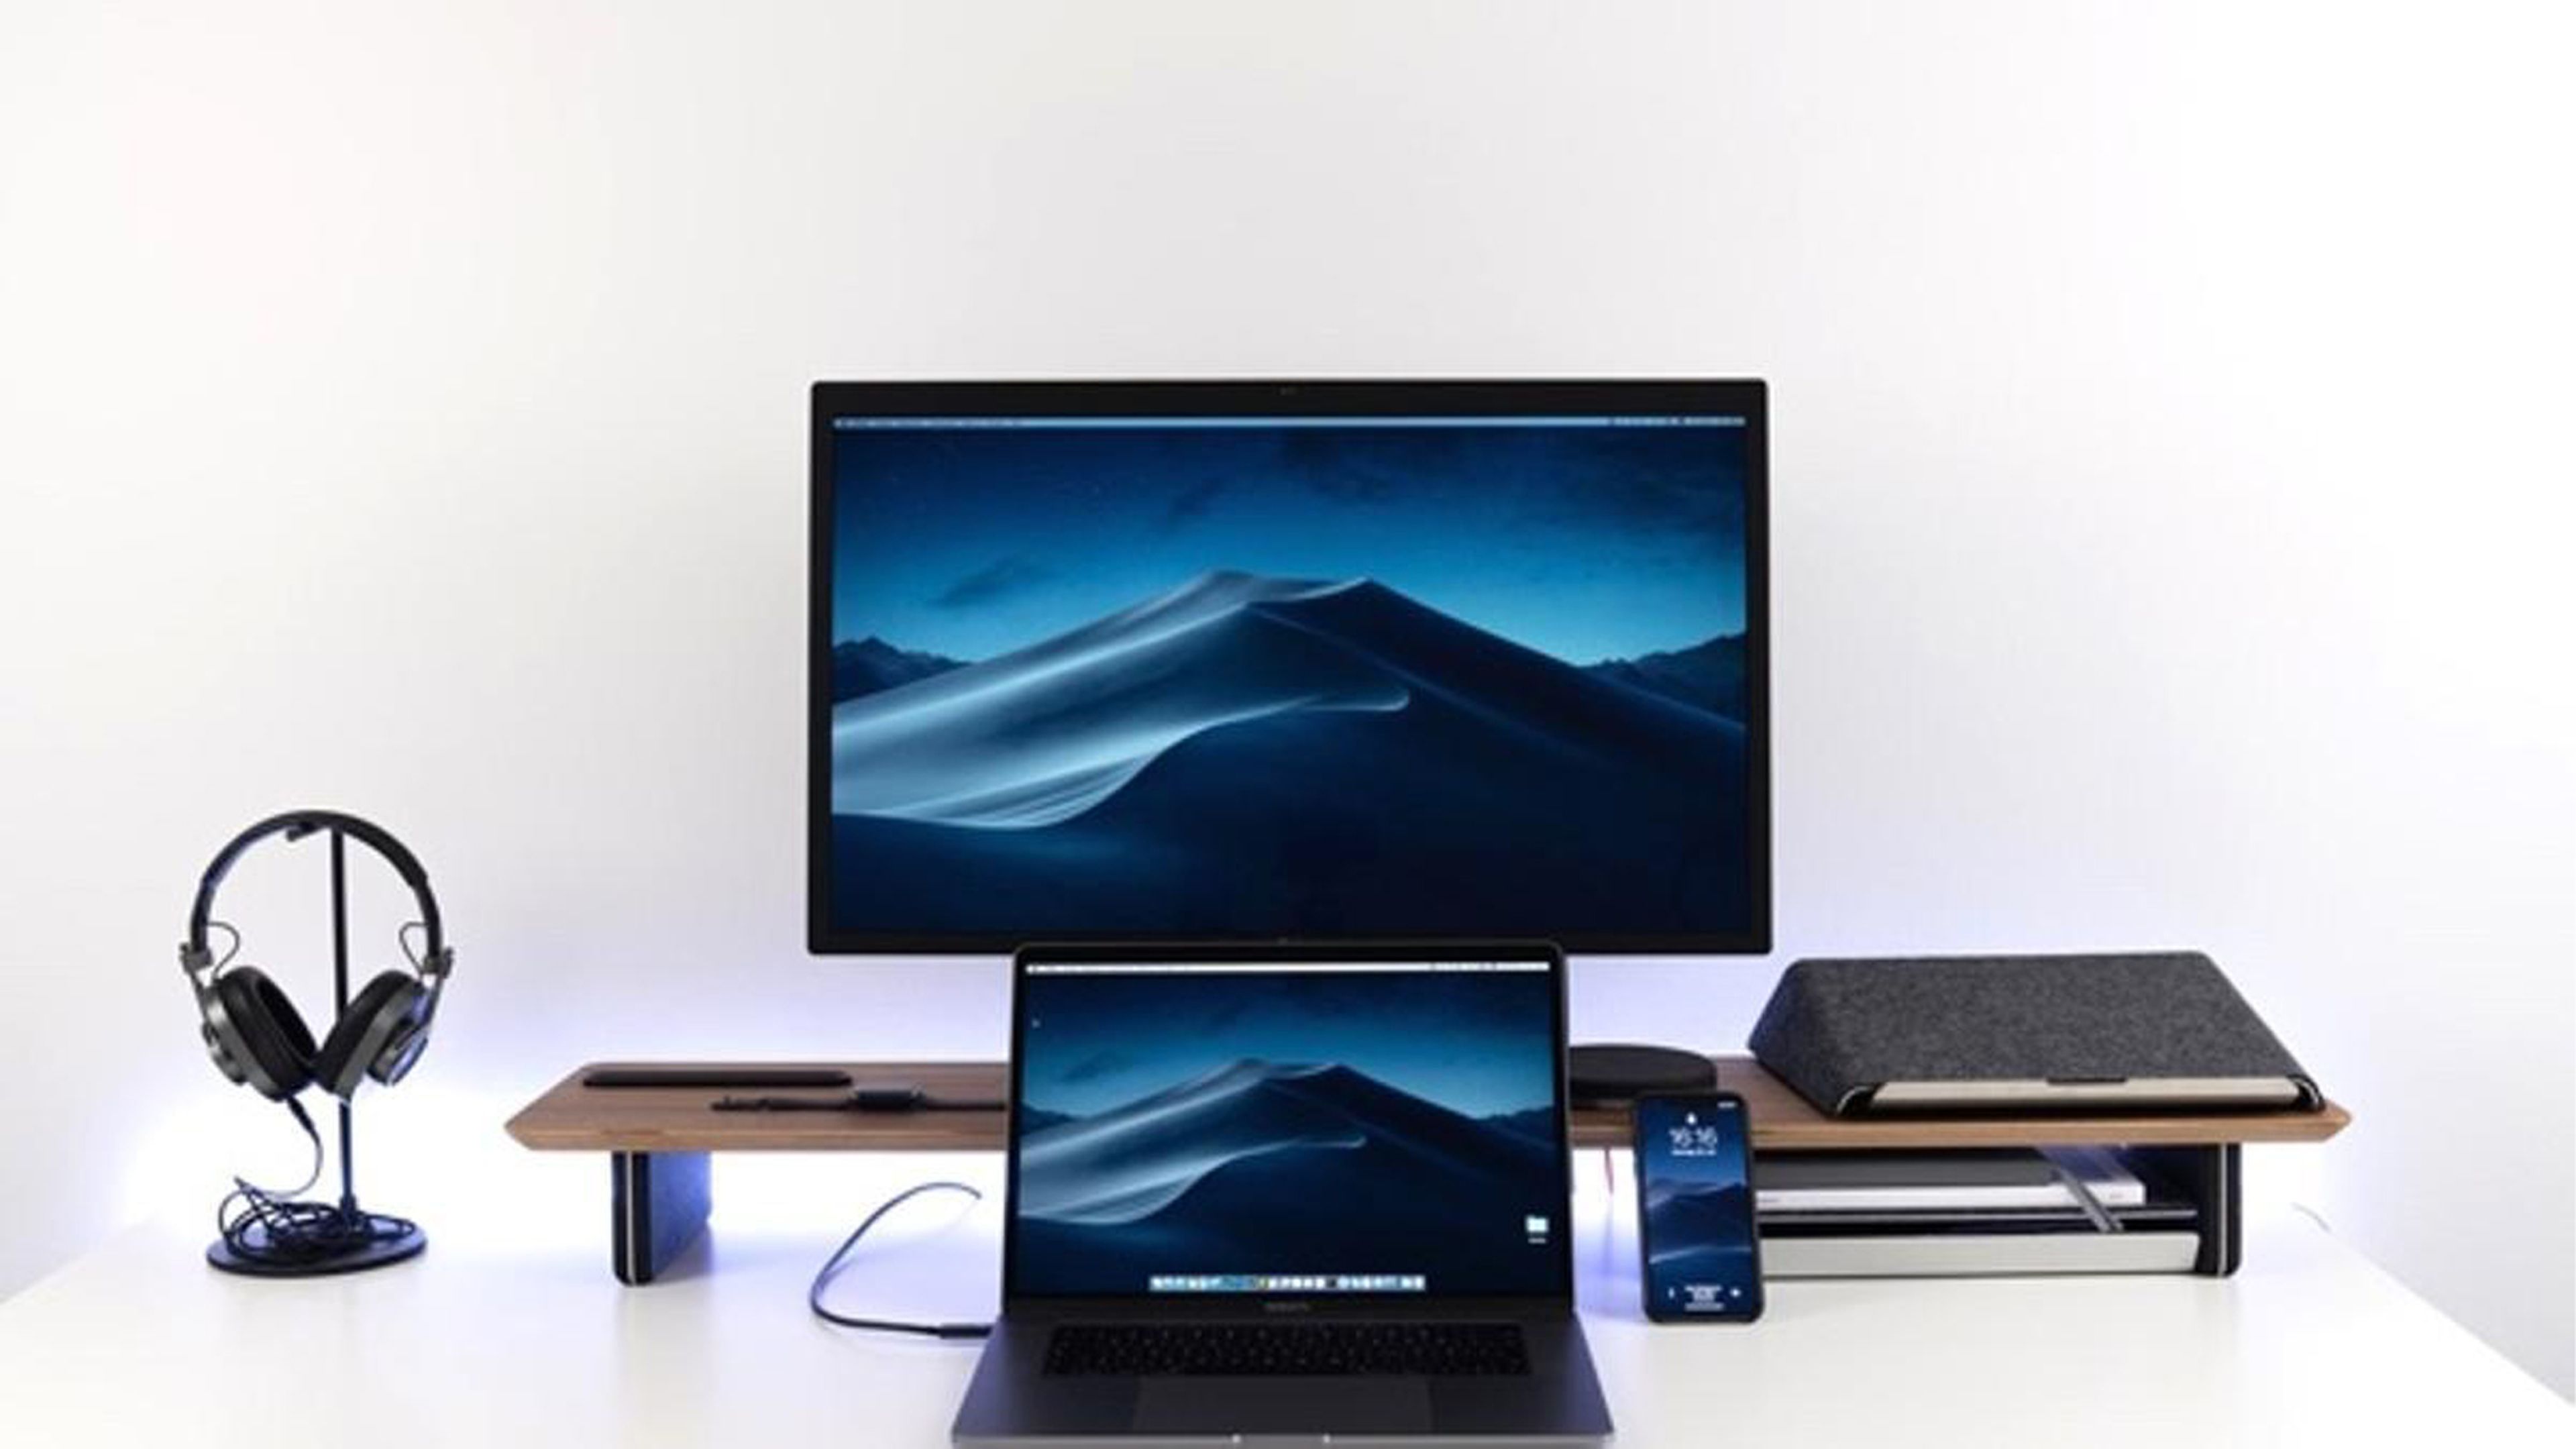 Conectar tu Mac a pantalla externa